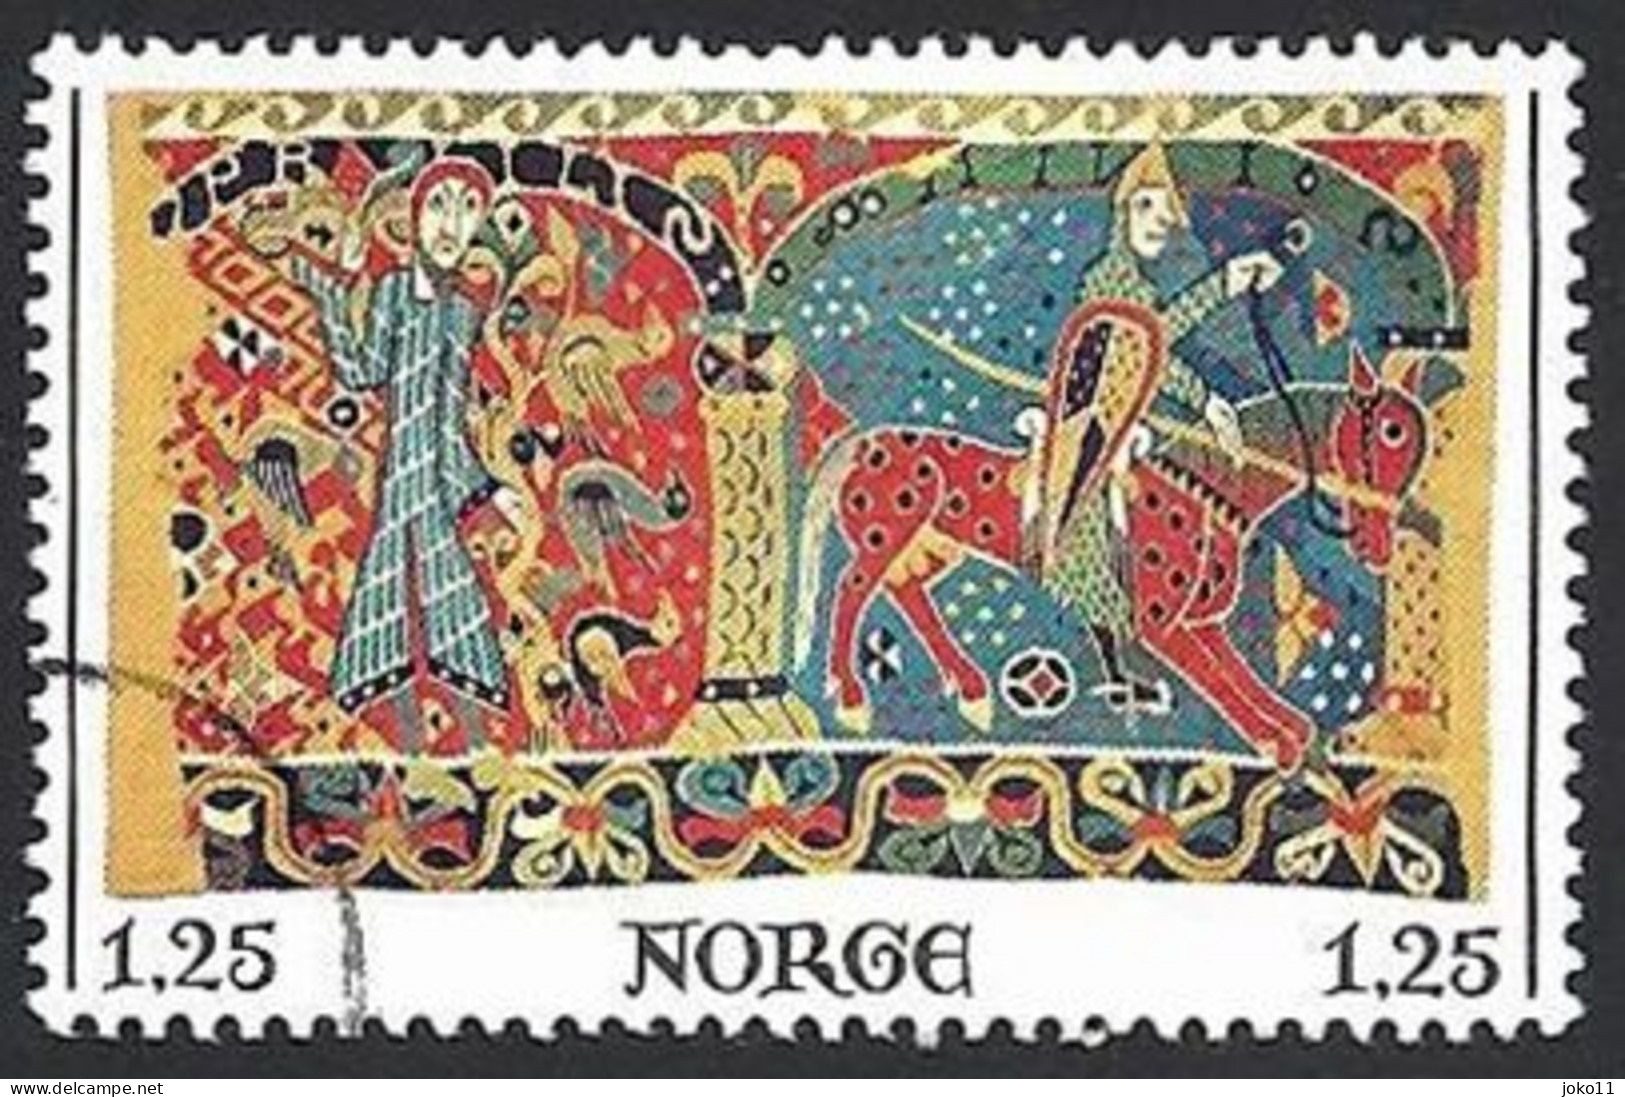 Norwegen, 1976, Mi.-Nr. 736, Gestempelt - Used Stamps